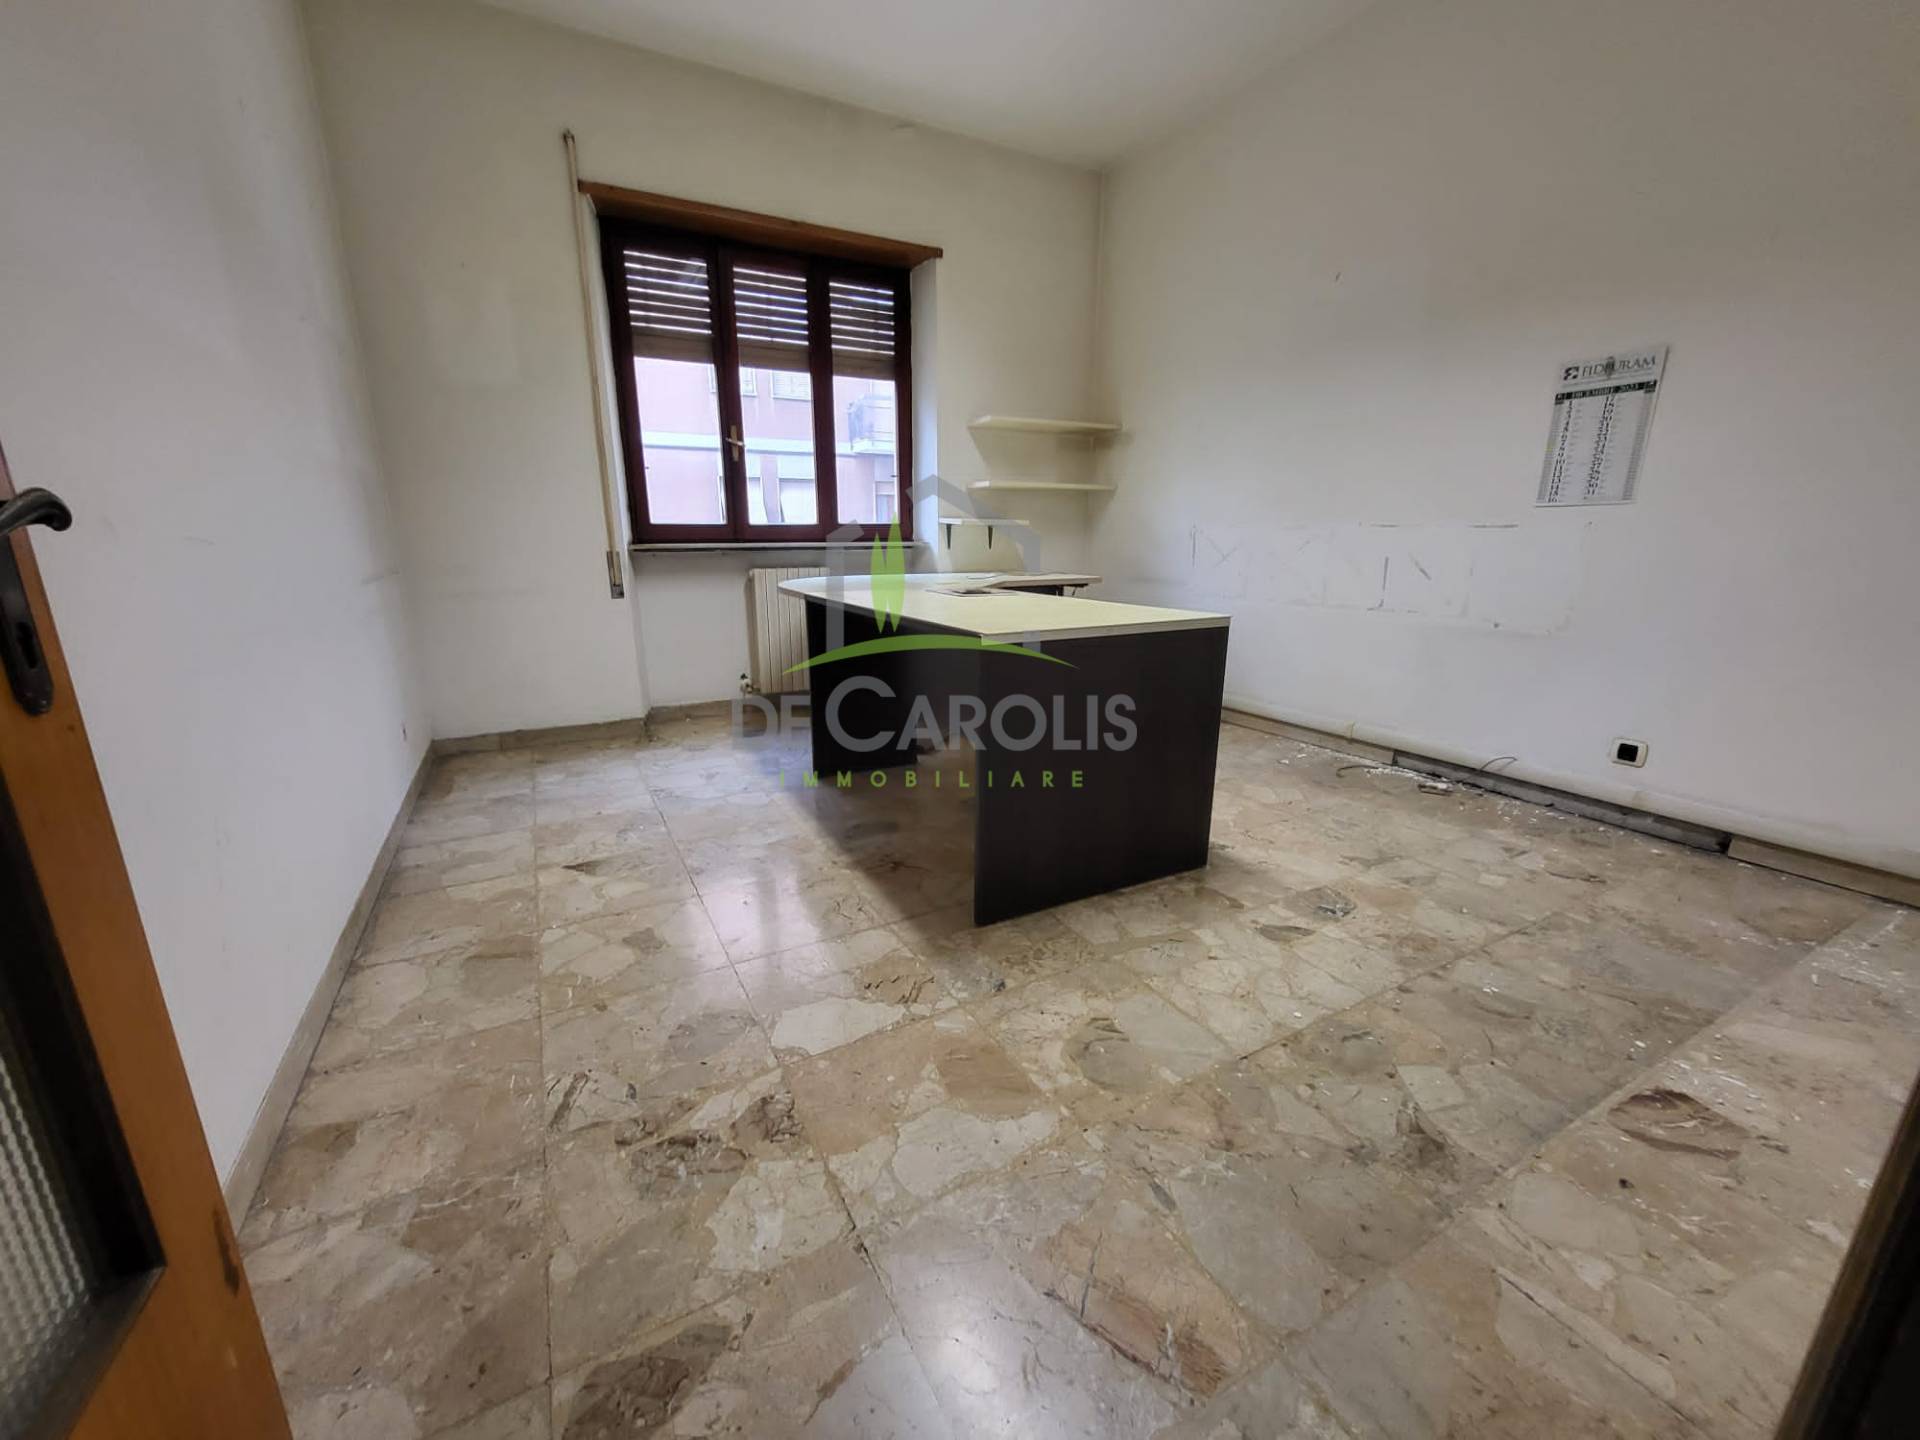 Appartamento in vendita a Ascoli Piceno, 2 locali, zona Località: PortaMaggiore, prezzo € 80.000 | PortaleAgenzieImmobiliari.it